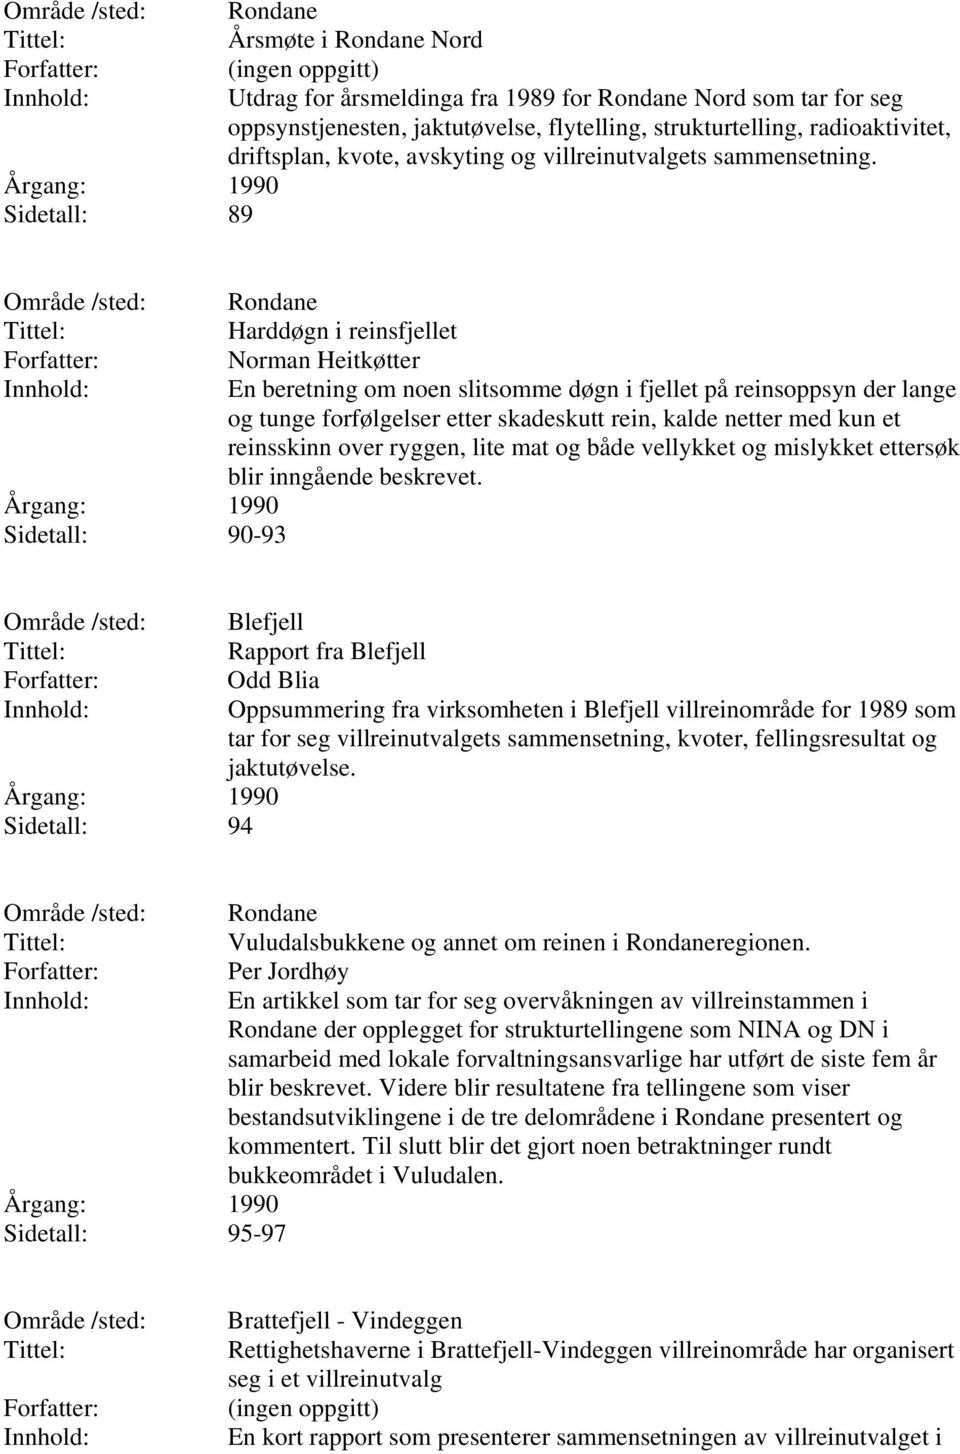 Sidetall: 90-93 Rondane Harddøgn i reinsfjellet Norman Heitkøtter En beretning om noen slitsomme døgn i fjellet på reinsoppsyn der lange og tunge forfølgelser etter skadeskutt rein, kalde netter med